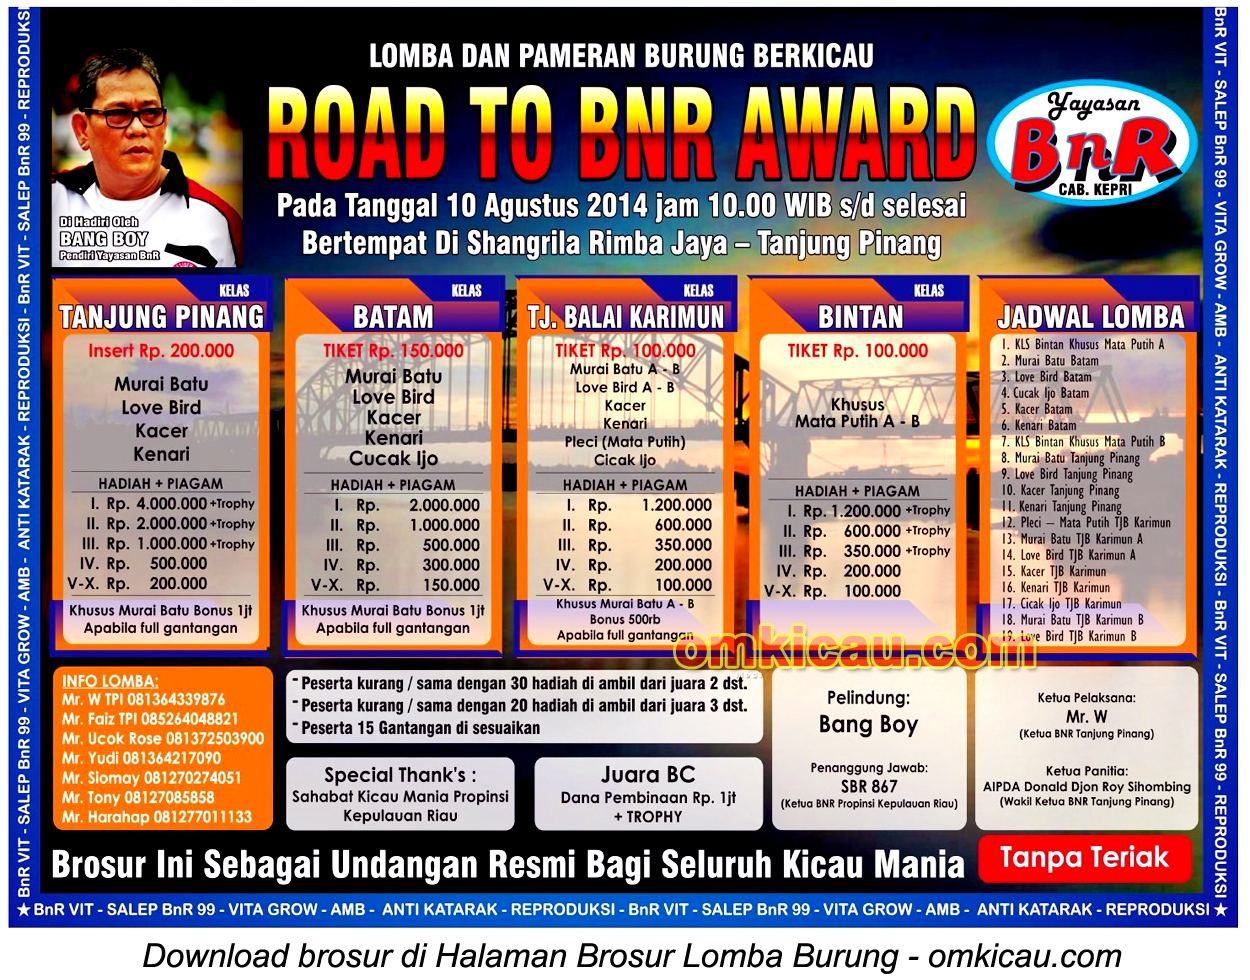 Brosur Lomba Burung Berkicau Road to BnR Award, Tanjungpinang, 10 Agustus 2014